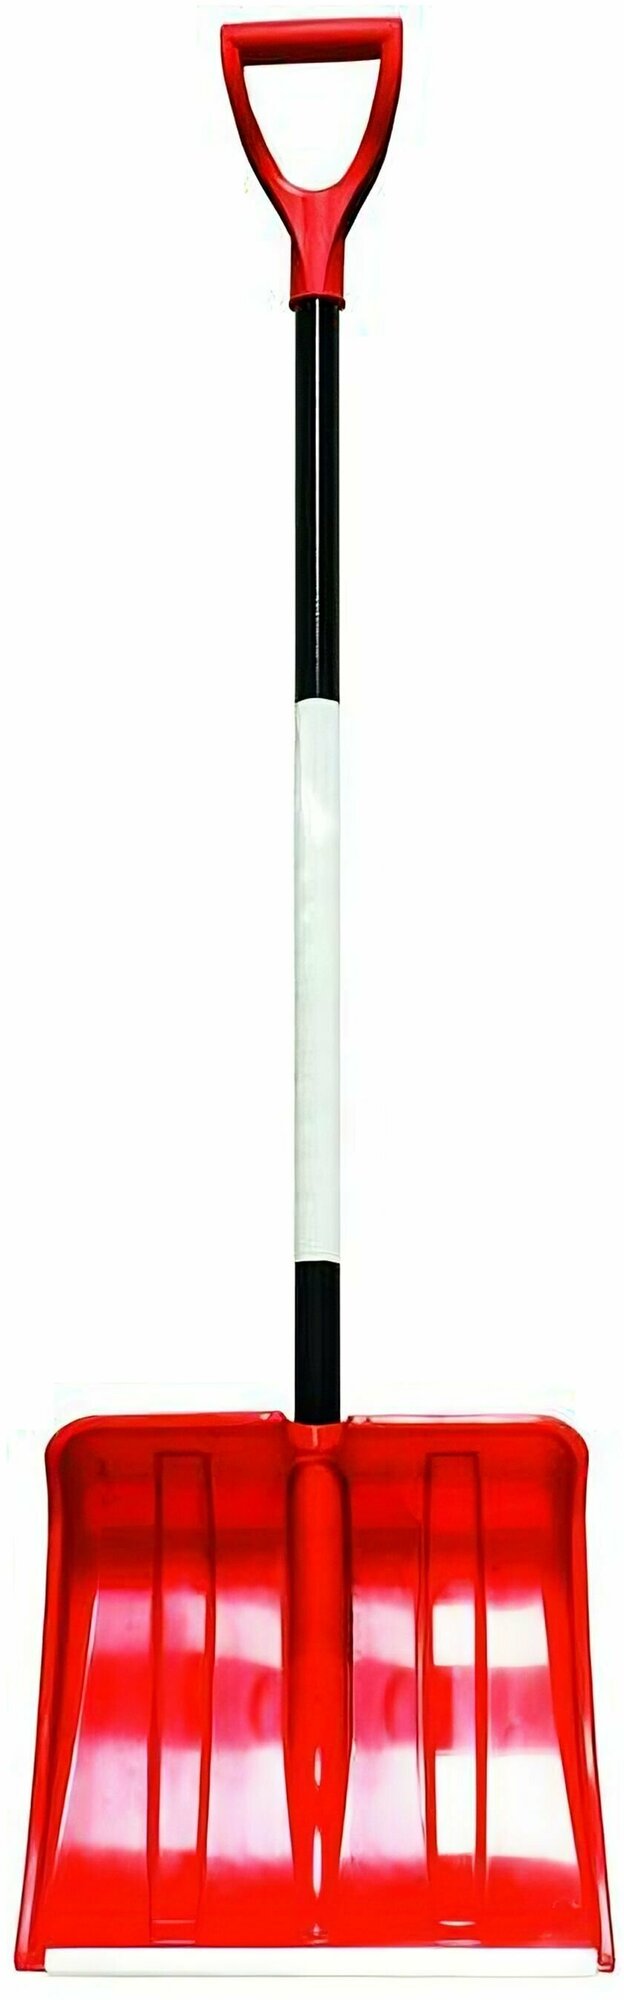 Лопата снегоуборочная, 380 x 370 мм: произведена из полипропилена; съемный алюминиевый черенок, V-образная ручка; отличается прочностью и износостойкостью